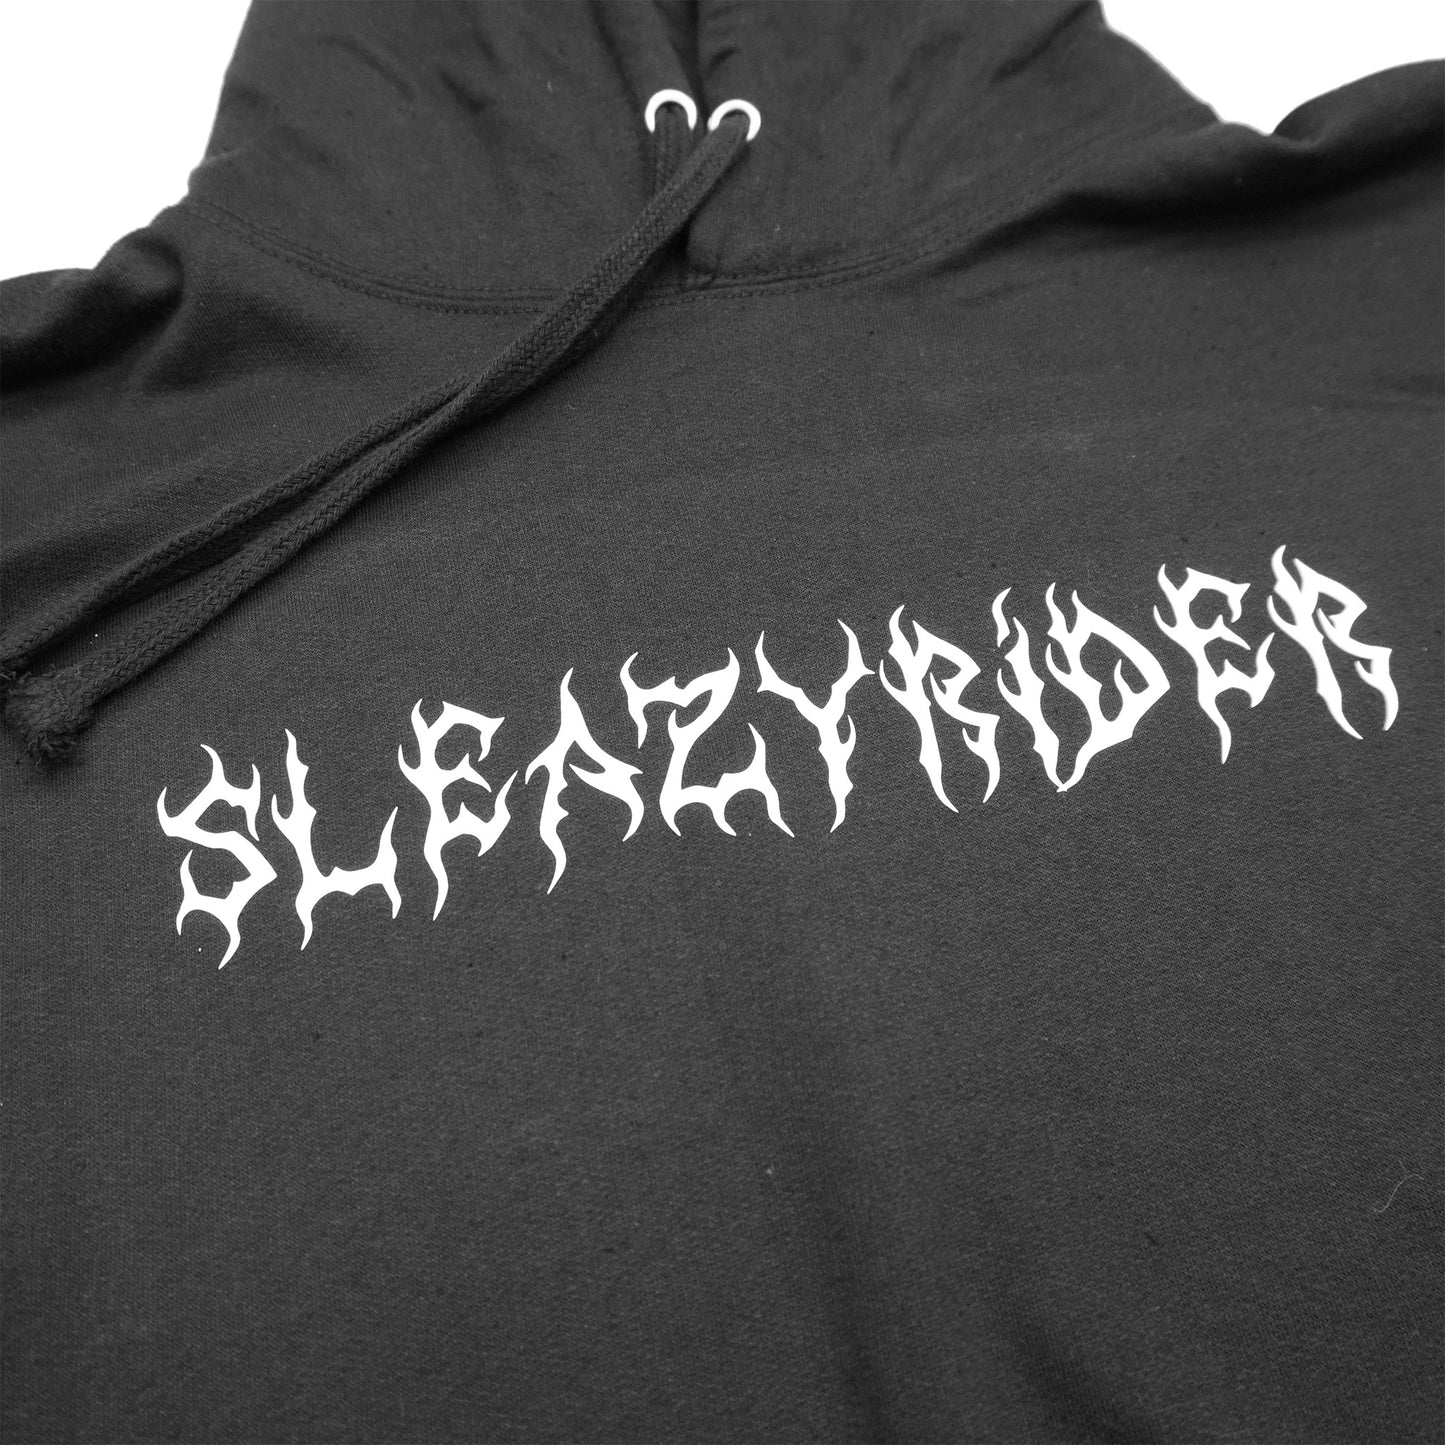 Sleazy Crosses Black Hoodie